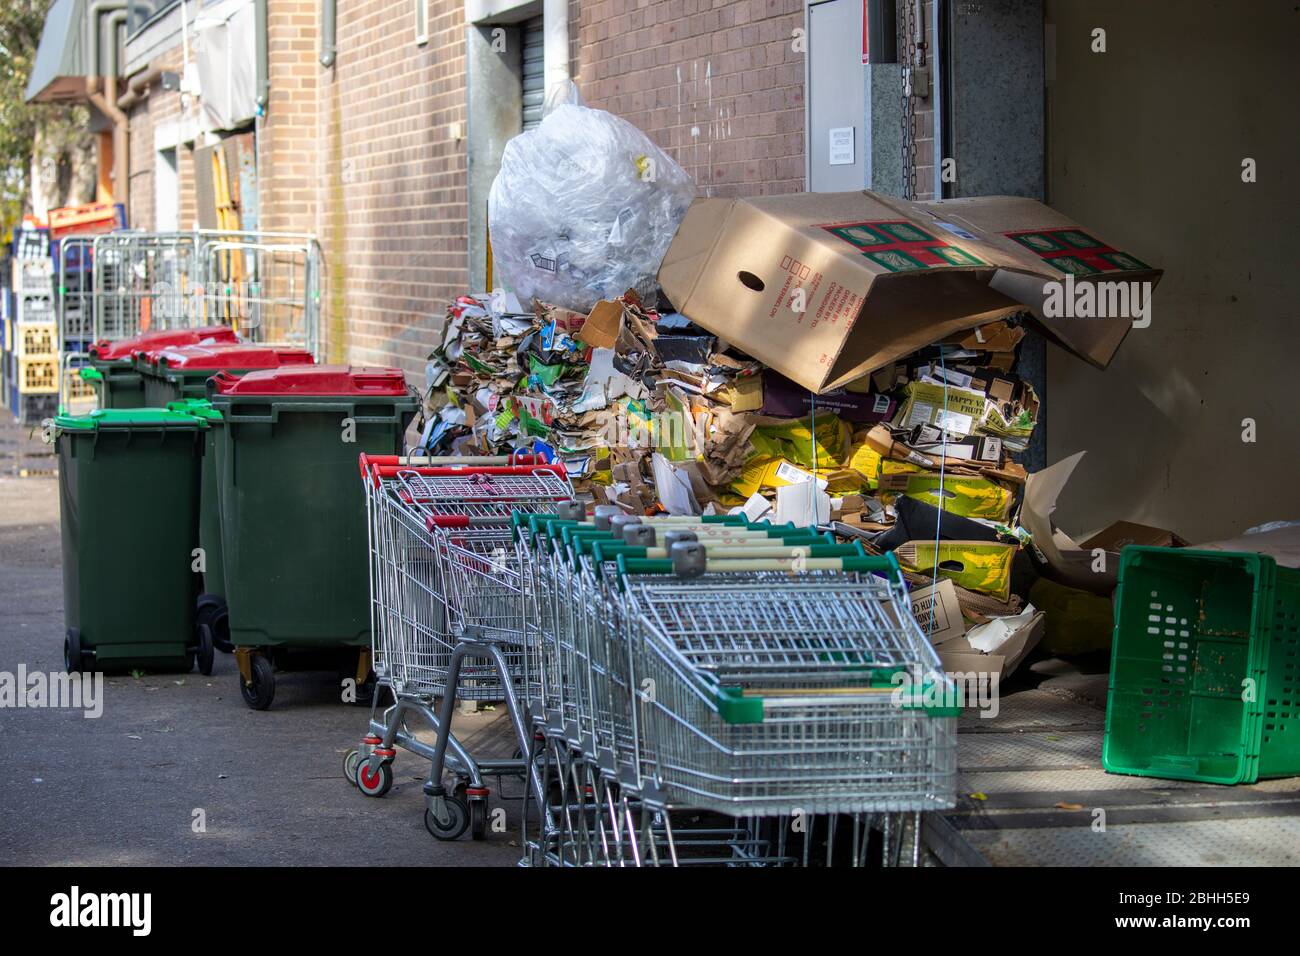 Cartone australiano del supermercato e detriti nella baia di carico imballata in su per lo smaltimento, Sydney, Australia Foto Stock